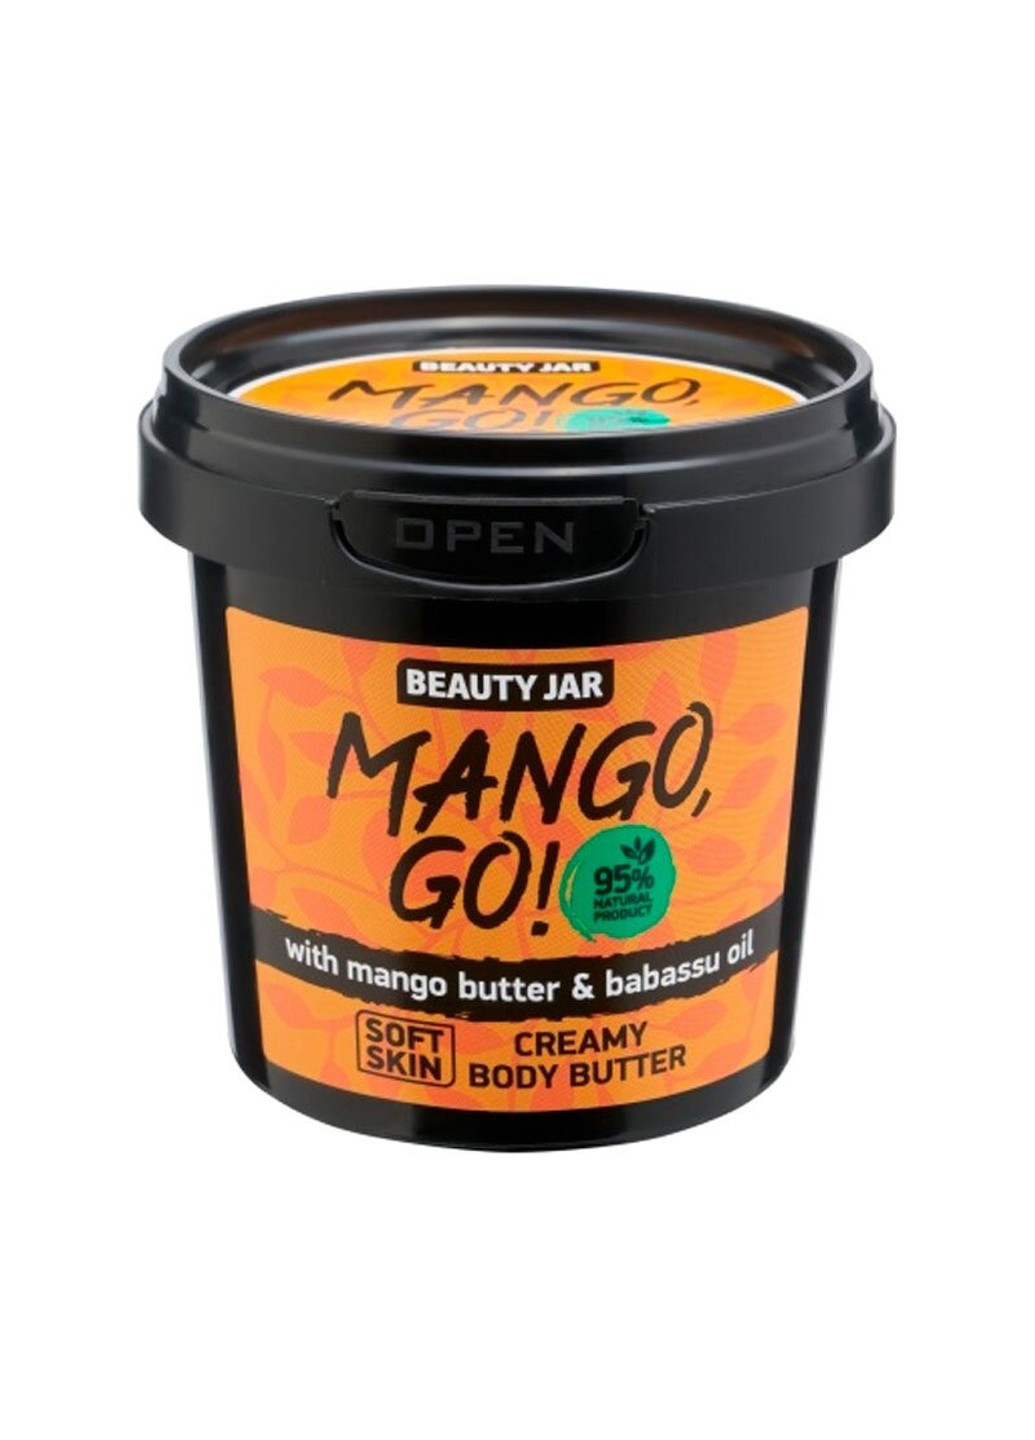 Крем-сливки для тела Mango, Go! 135 г Beauty Jar (252664541)